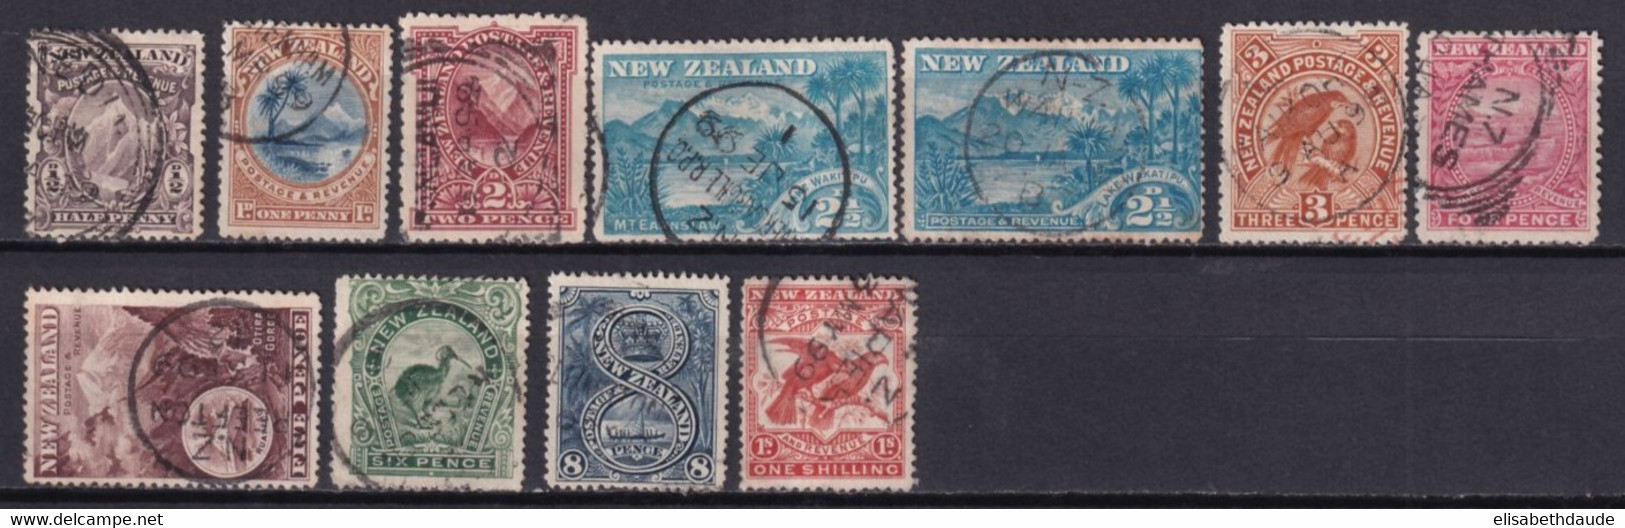 NEW ZEALAND - 1898 - YVERT N° 70/78+80 OBLITERES - COTE = 230 EUR. - - Oblitérés